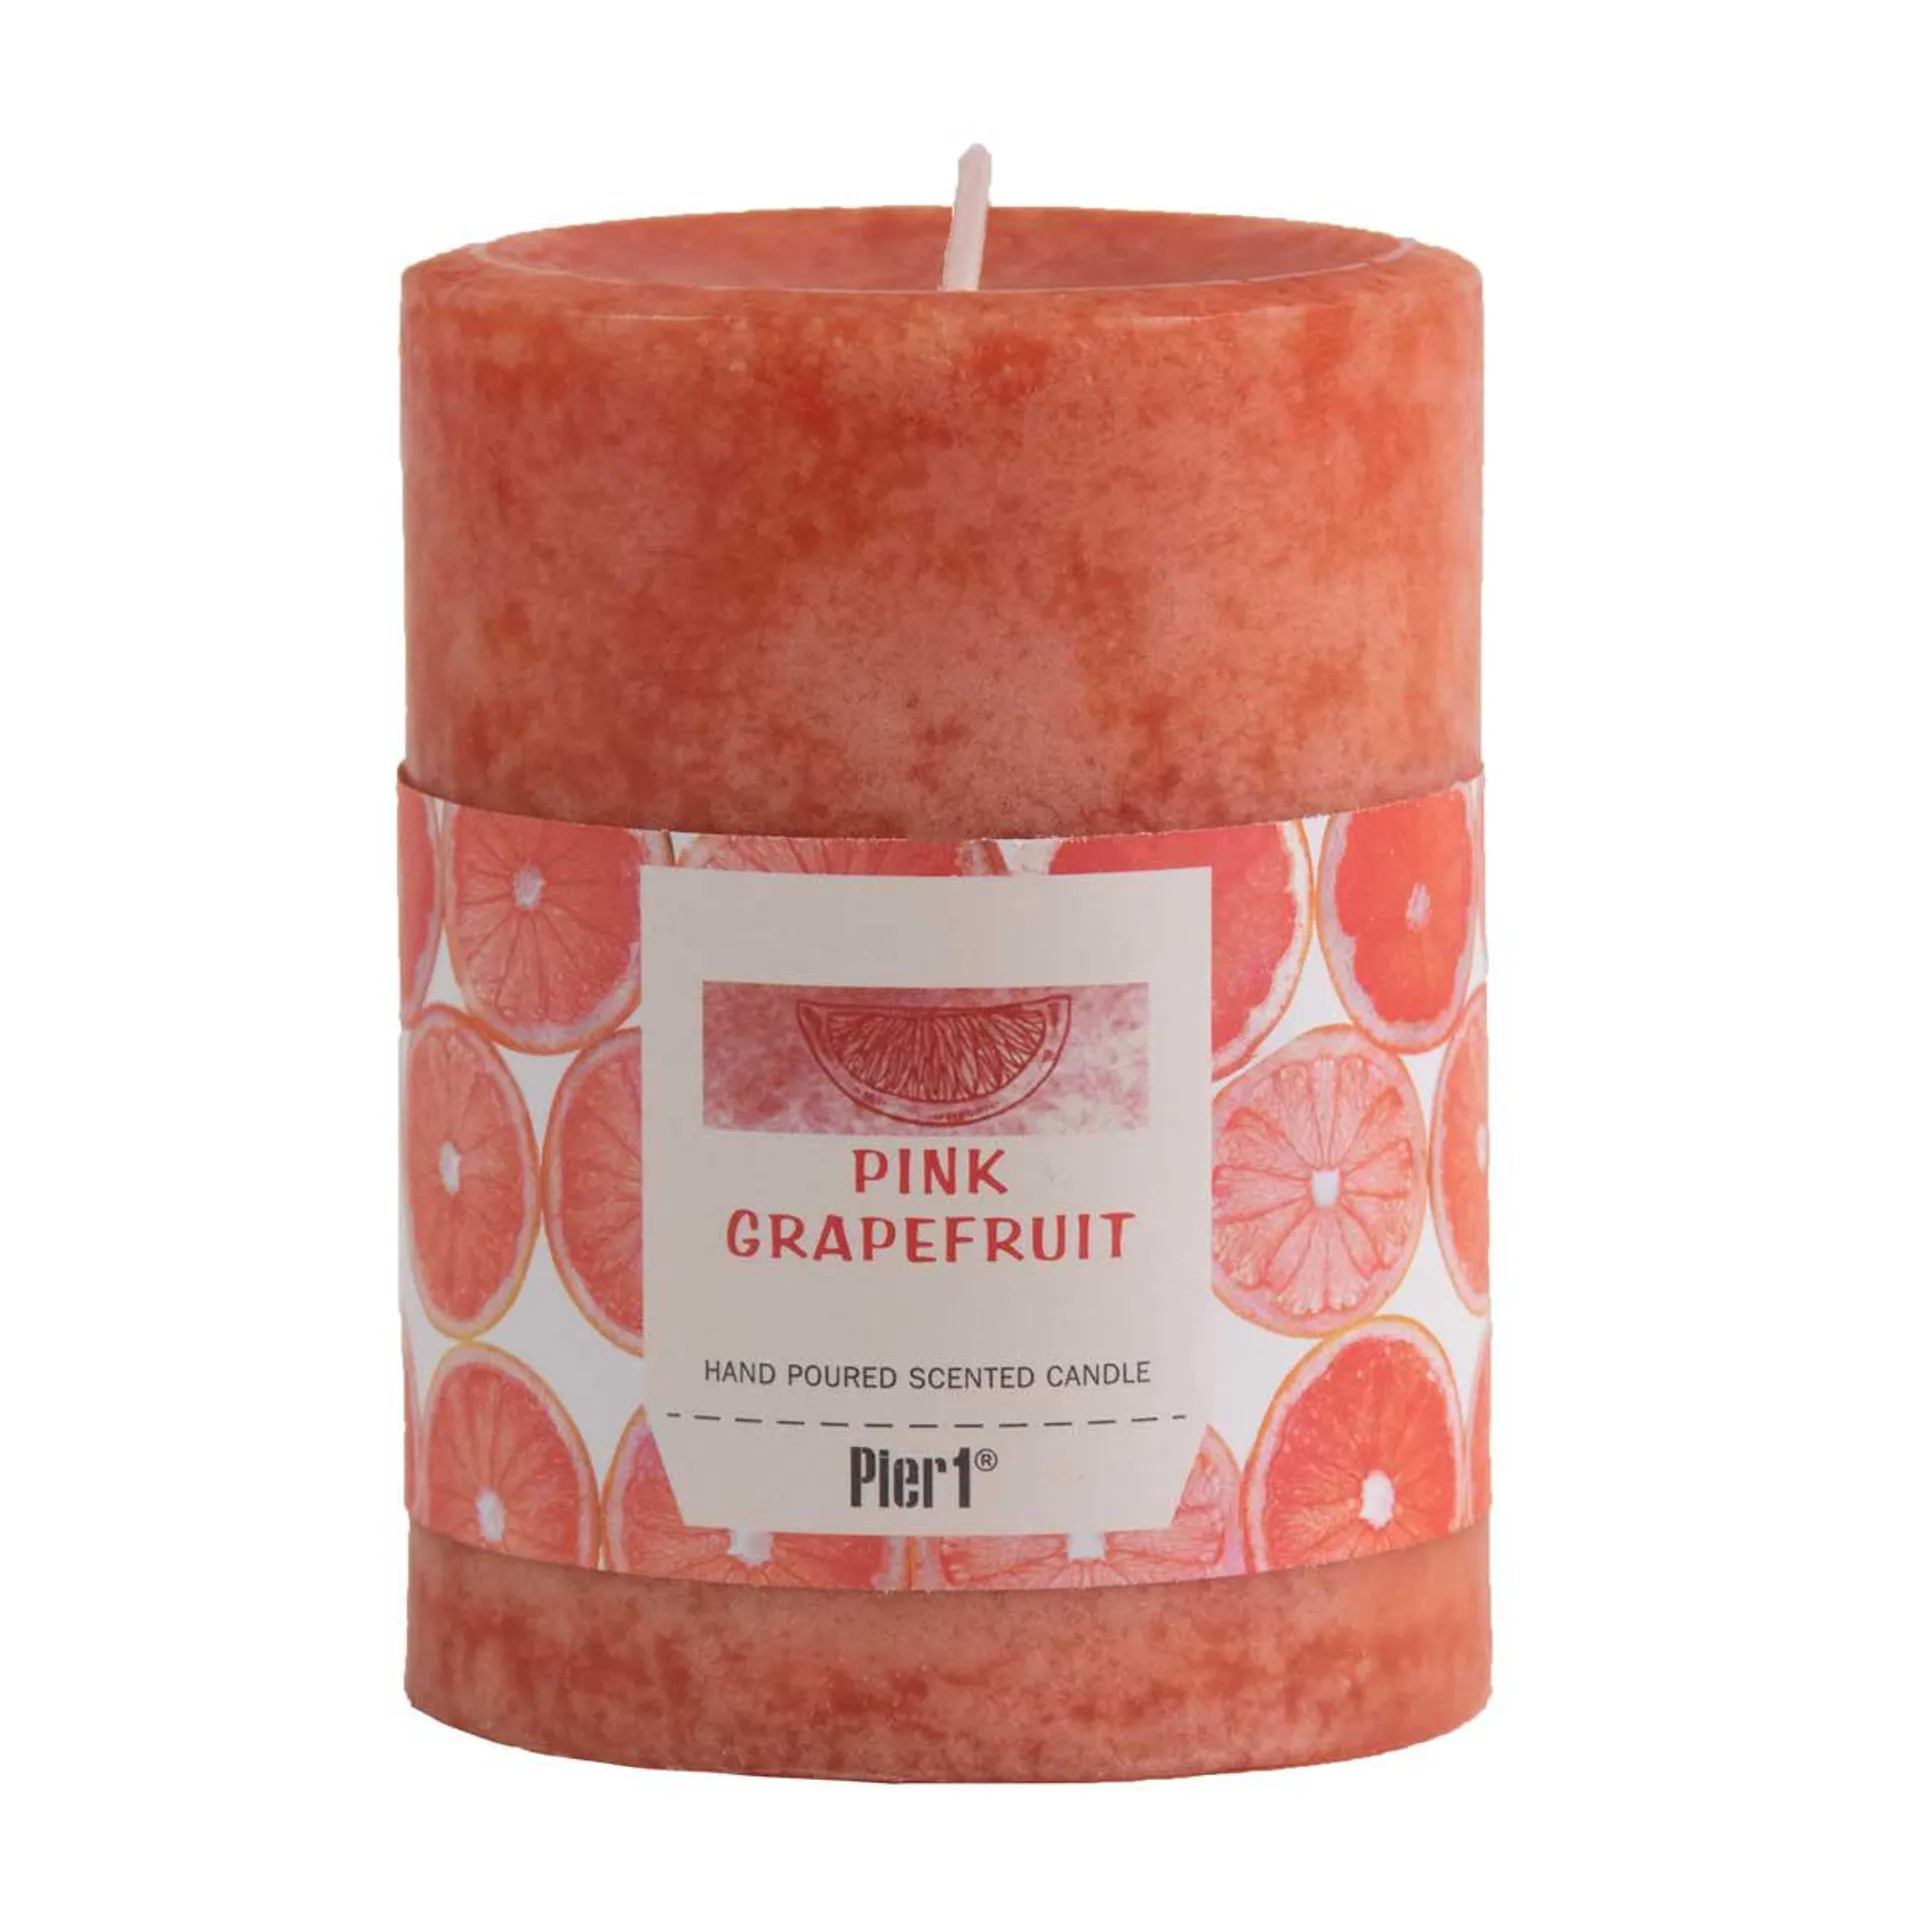 Pier 1 Pink Grapefruit 3x4 Mottled Pillar Candle